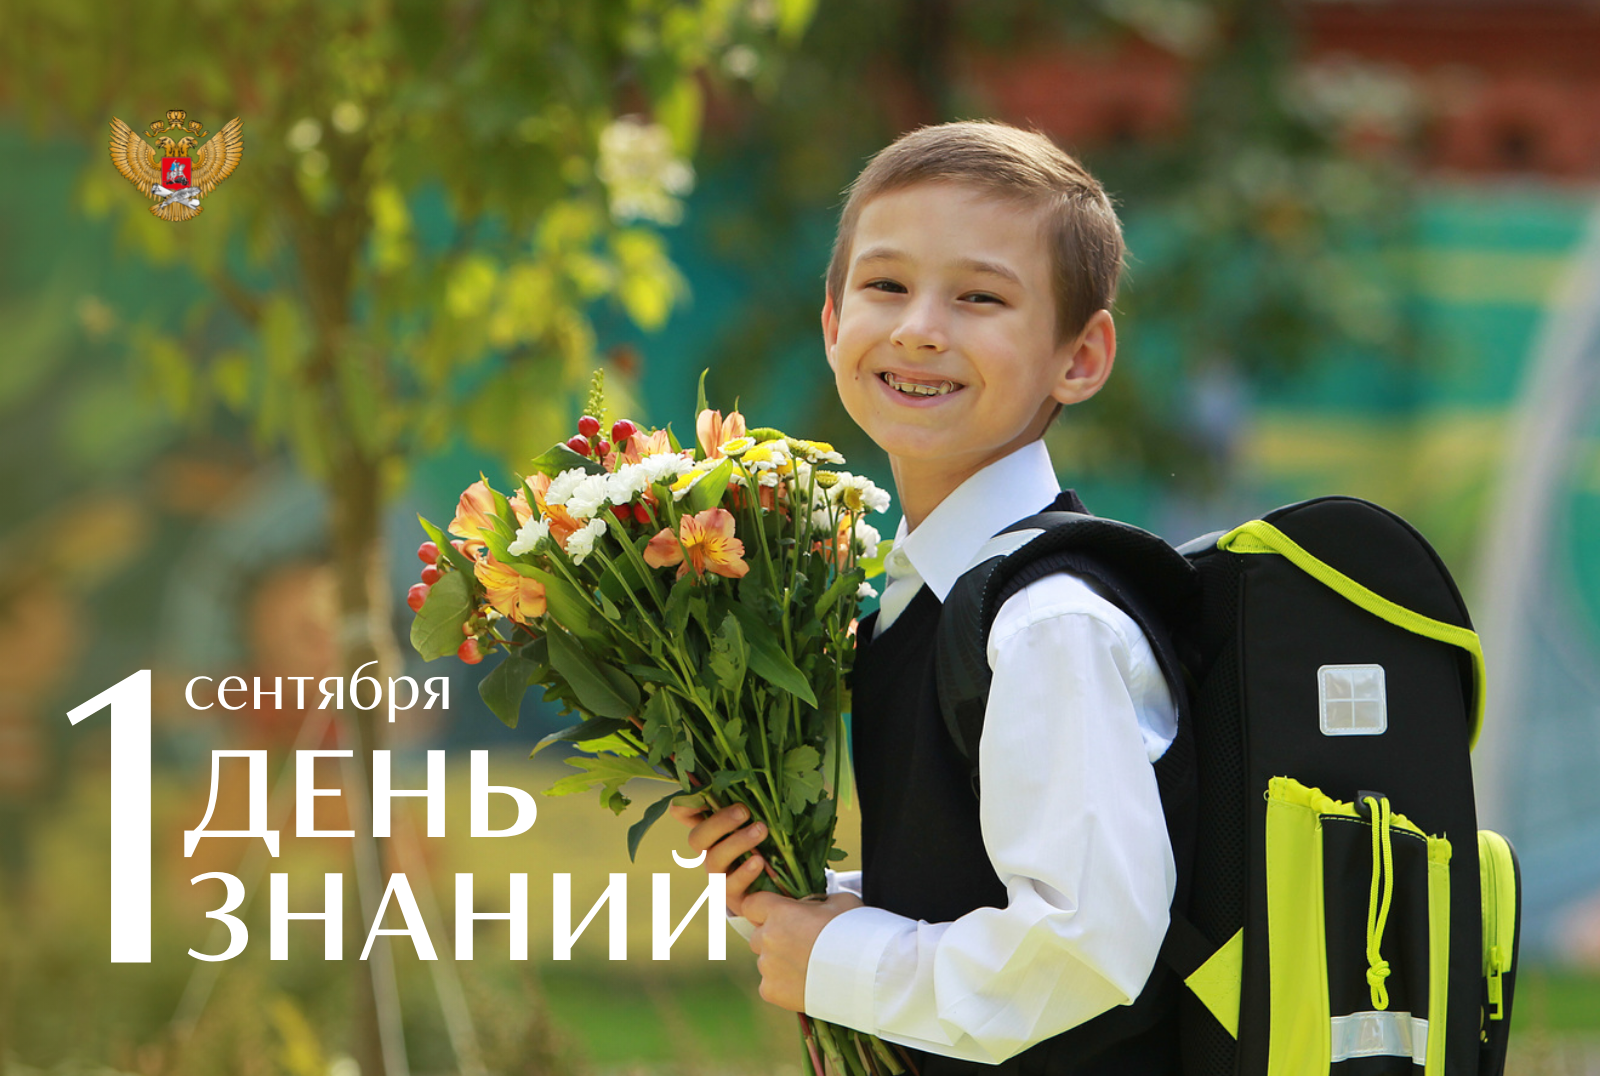 Министр просвещения Сергей Кравцов поздравил школьников с Днем знаний.